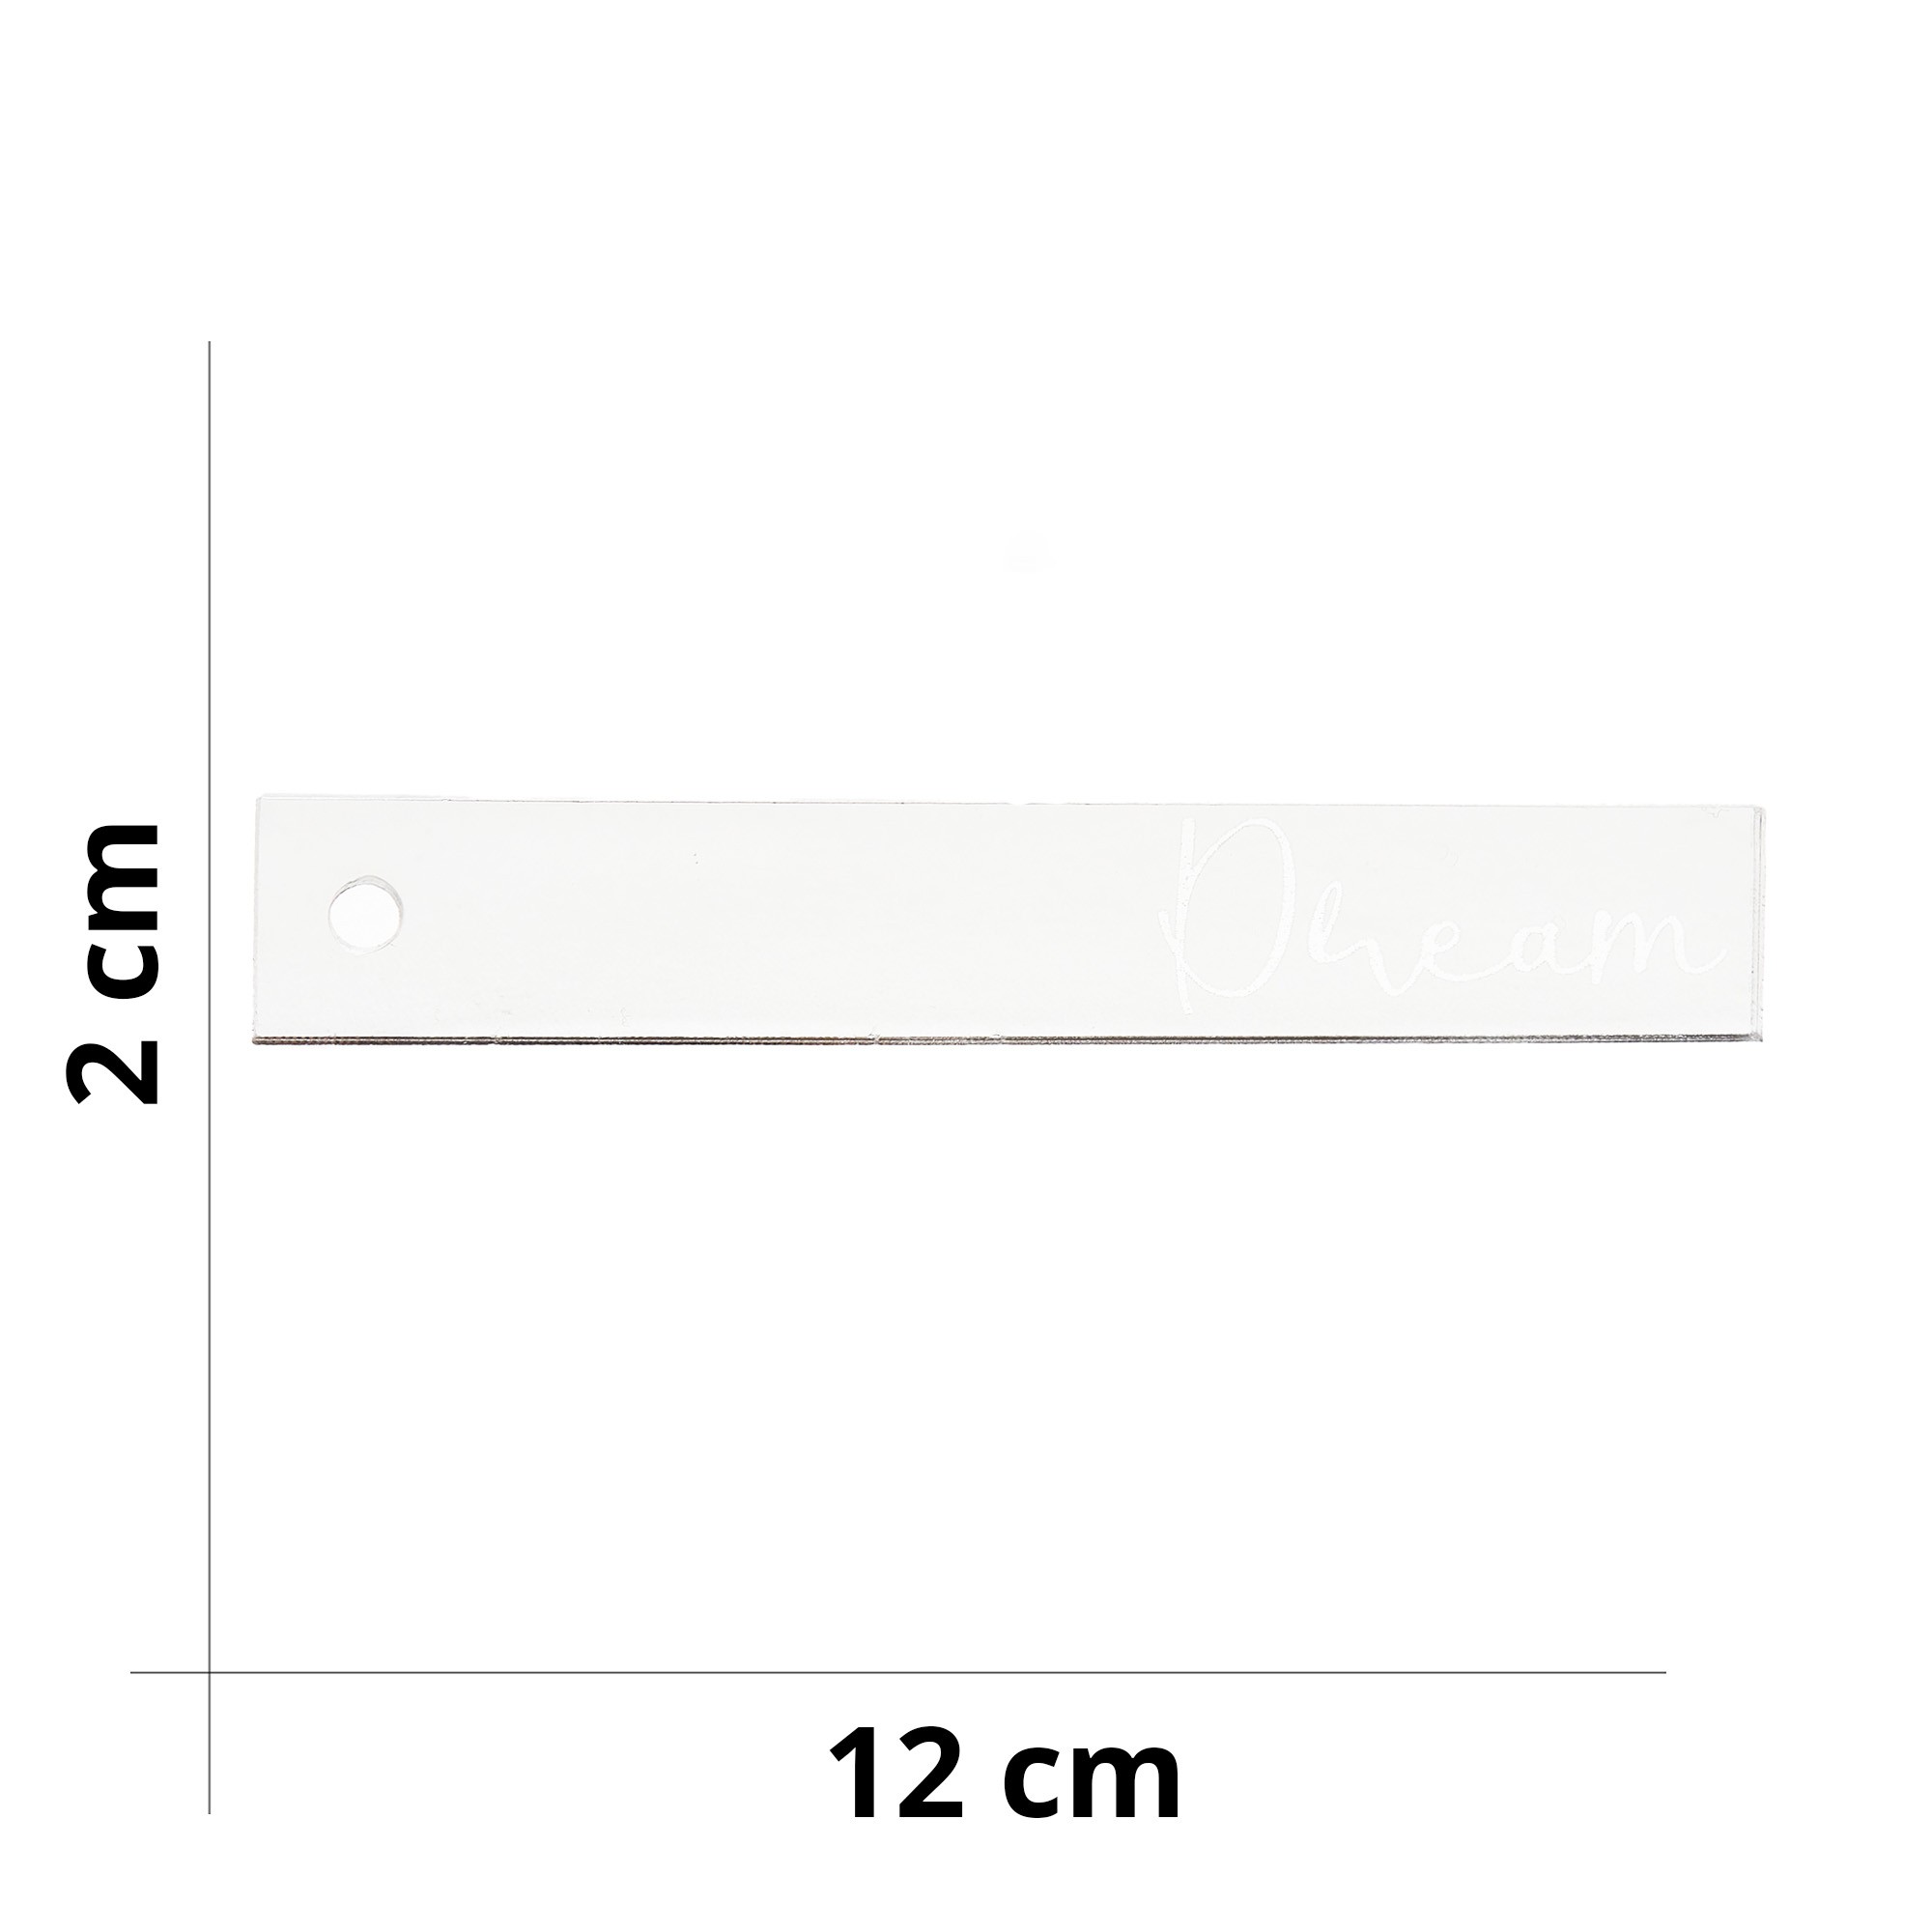 Segnalibro Scritta Dream - Decorazione in plexiglass - Misura 12 x 2 cm